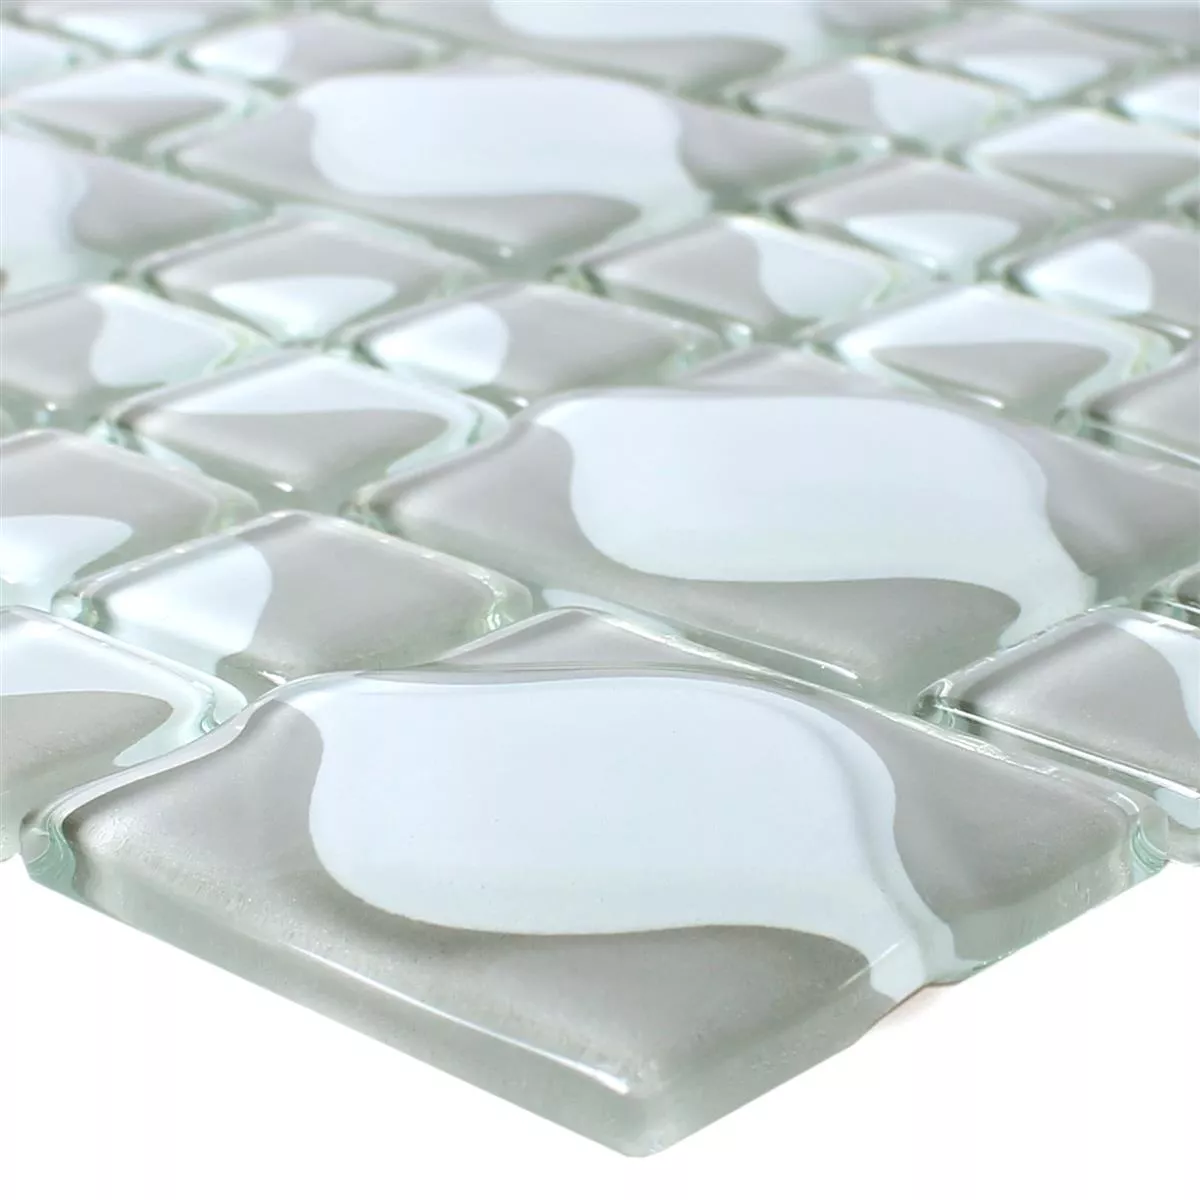 Sample Glass Mosaic Tiles Nokta Grey White 3D